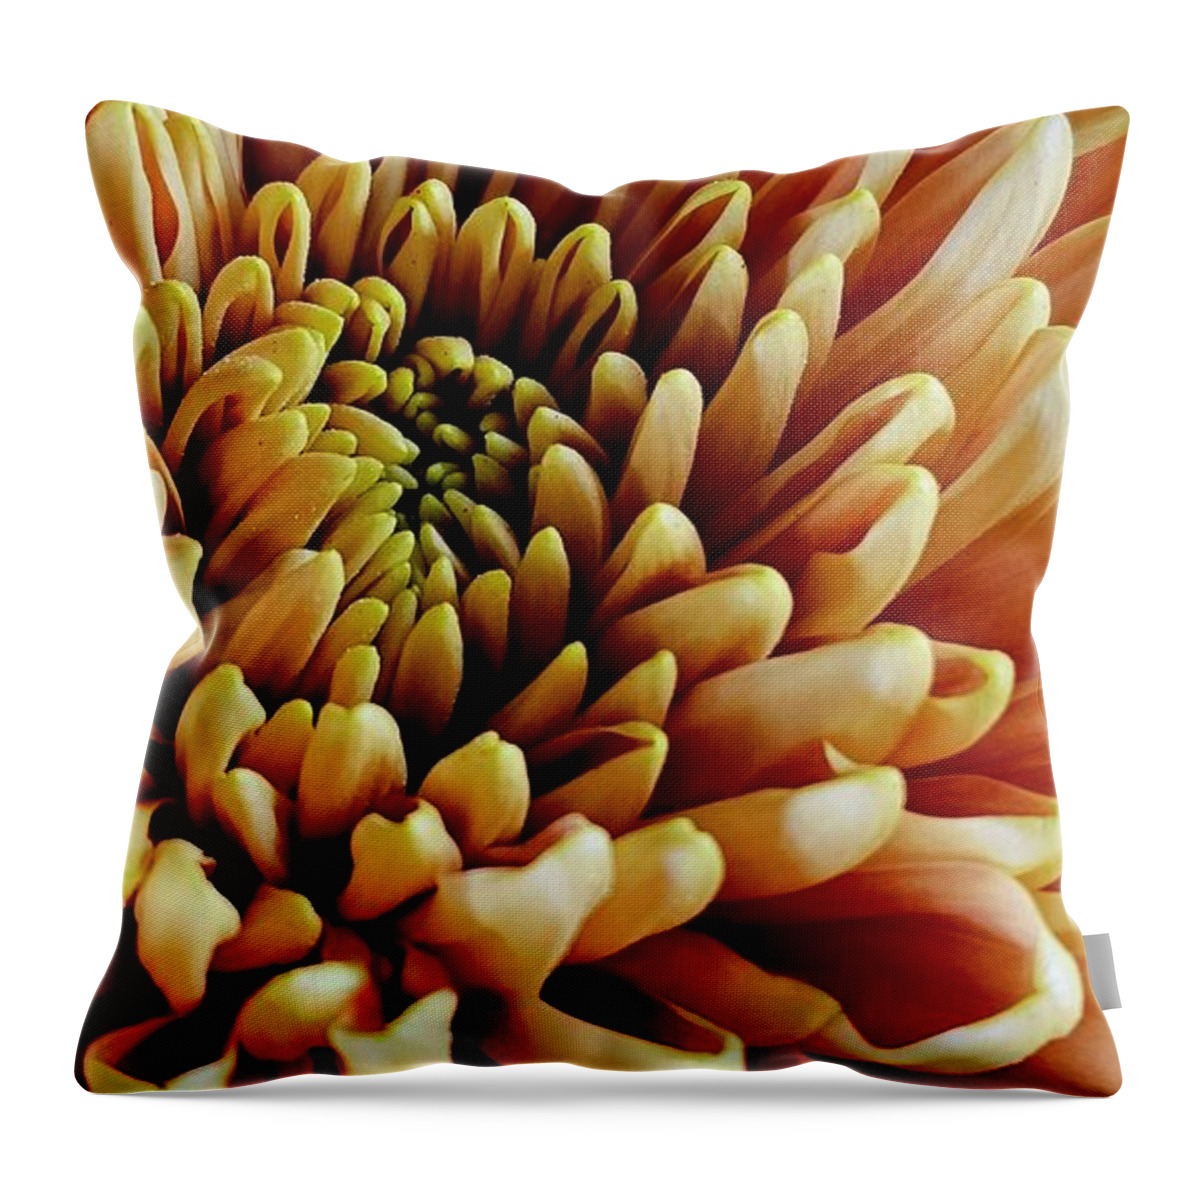 Art Throw Pillow featuring the photograph Golden Fall Chrysanthemum by Jeannie Rhode